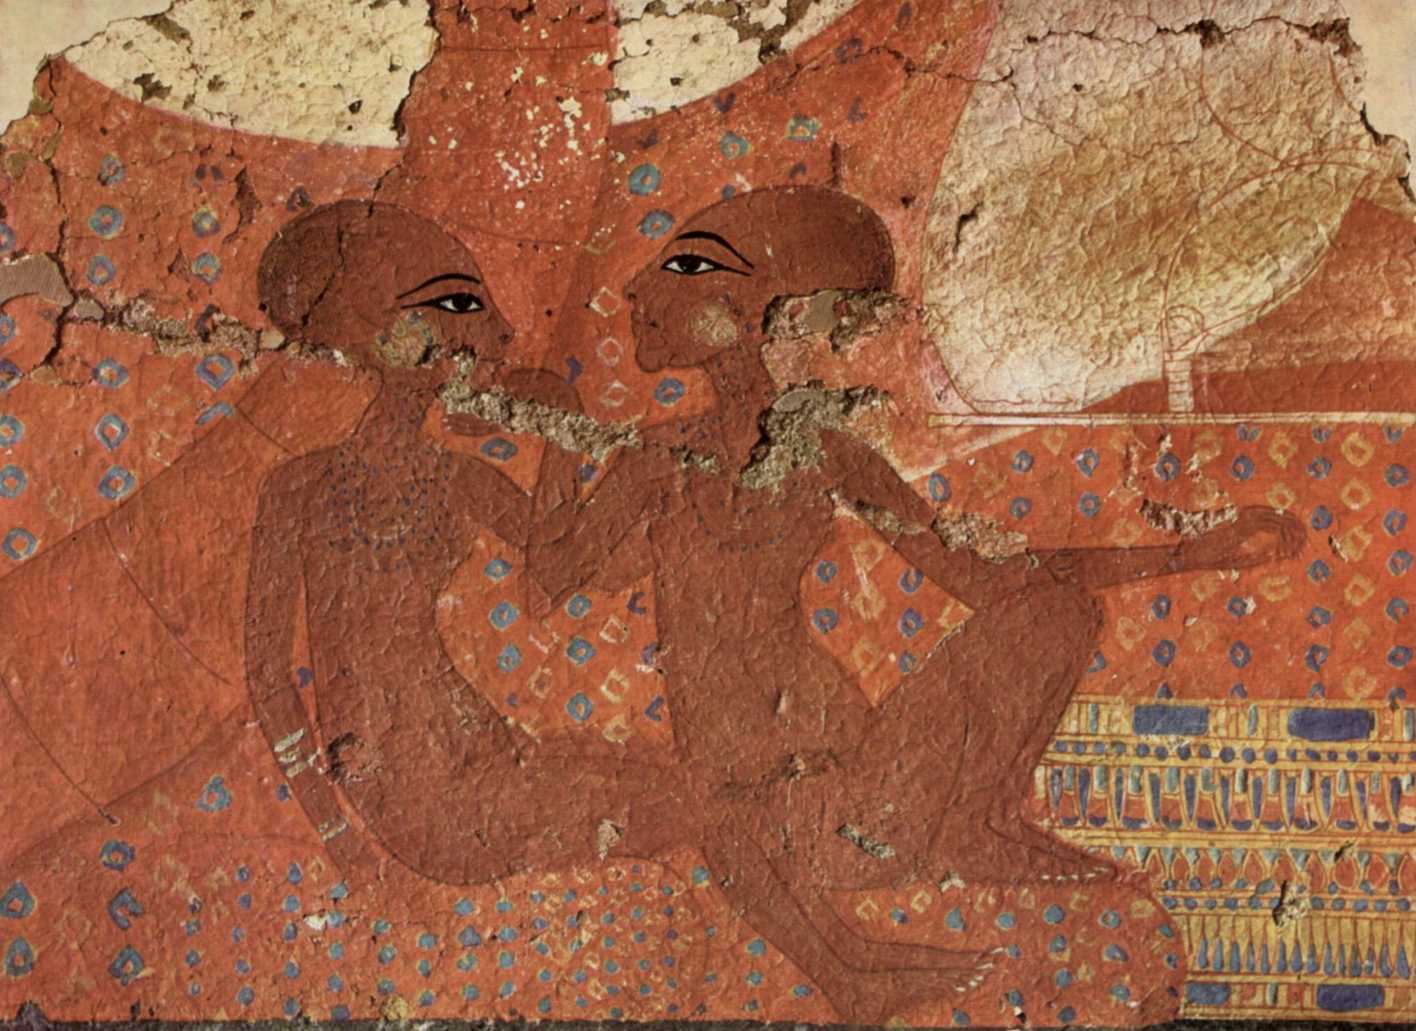 Akhenaton'un iki kızı, Nofernoferuaton ve Nofernoferure